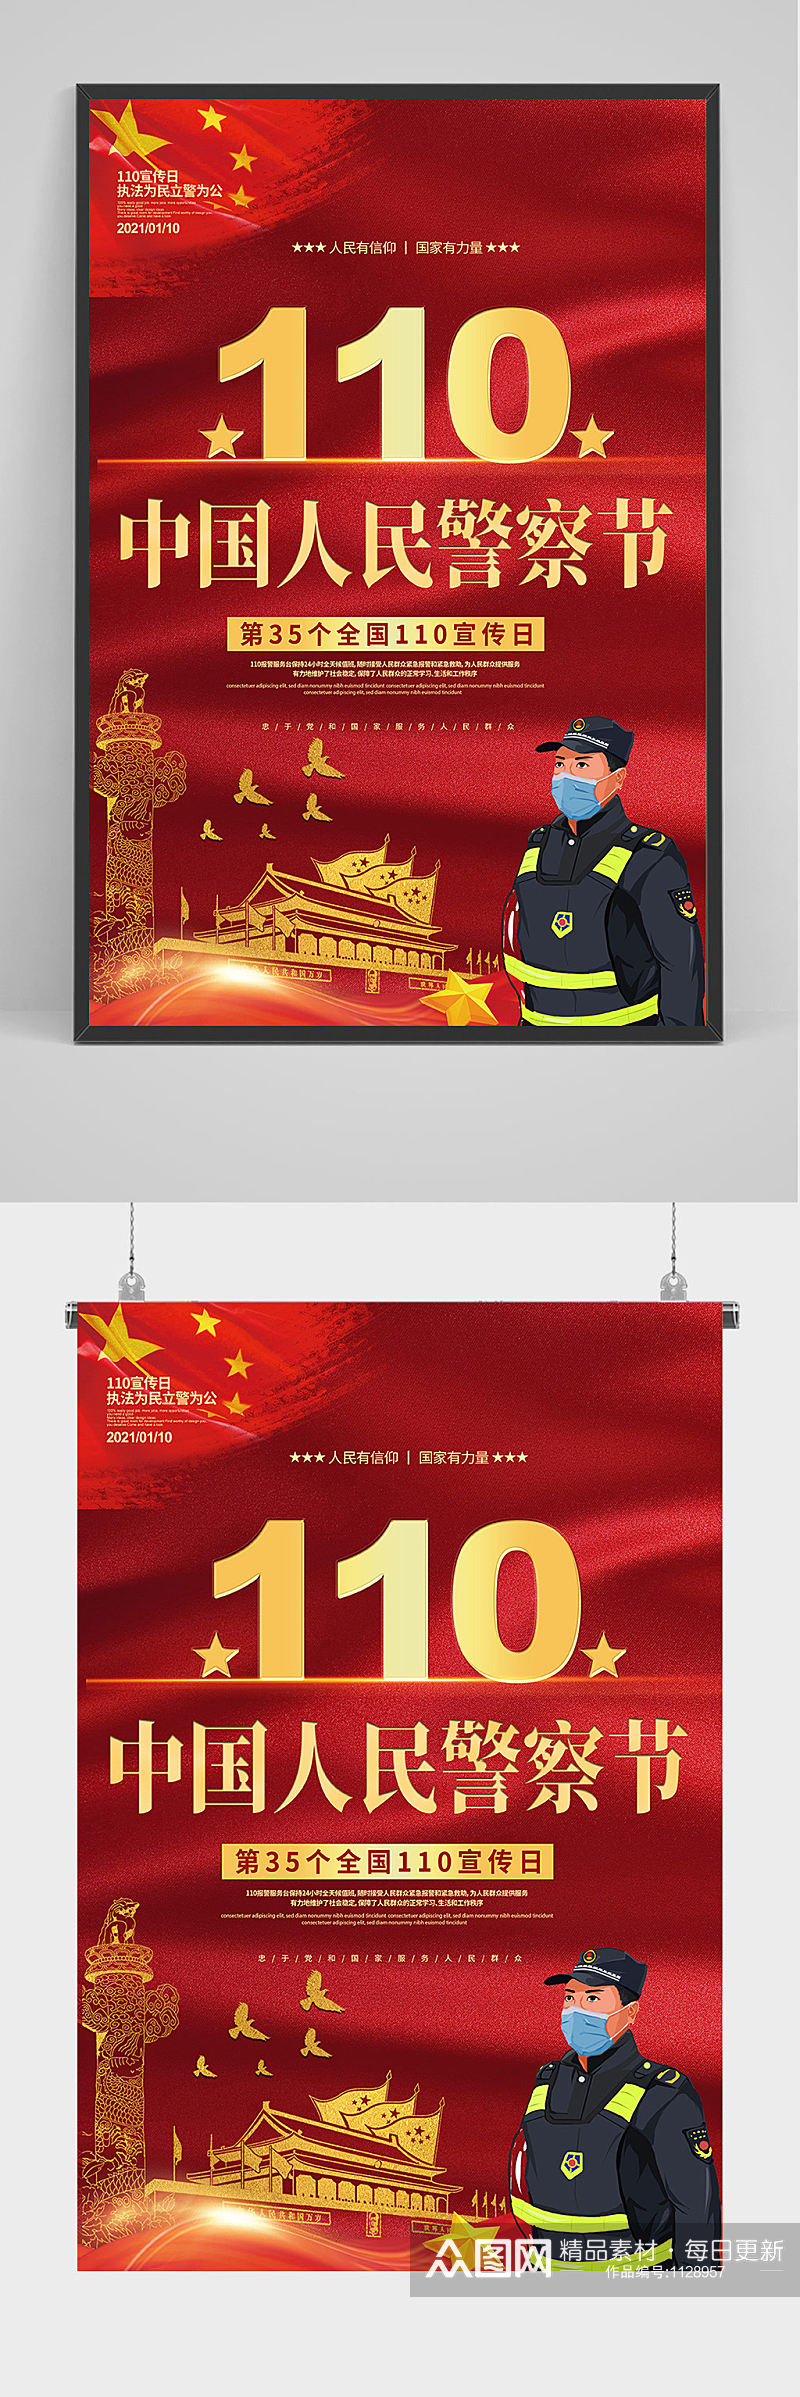 110中国人民警察节海报设计素材